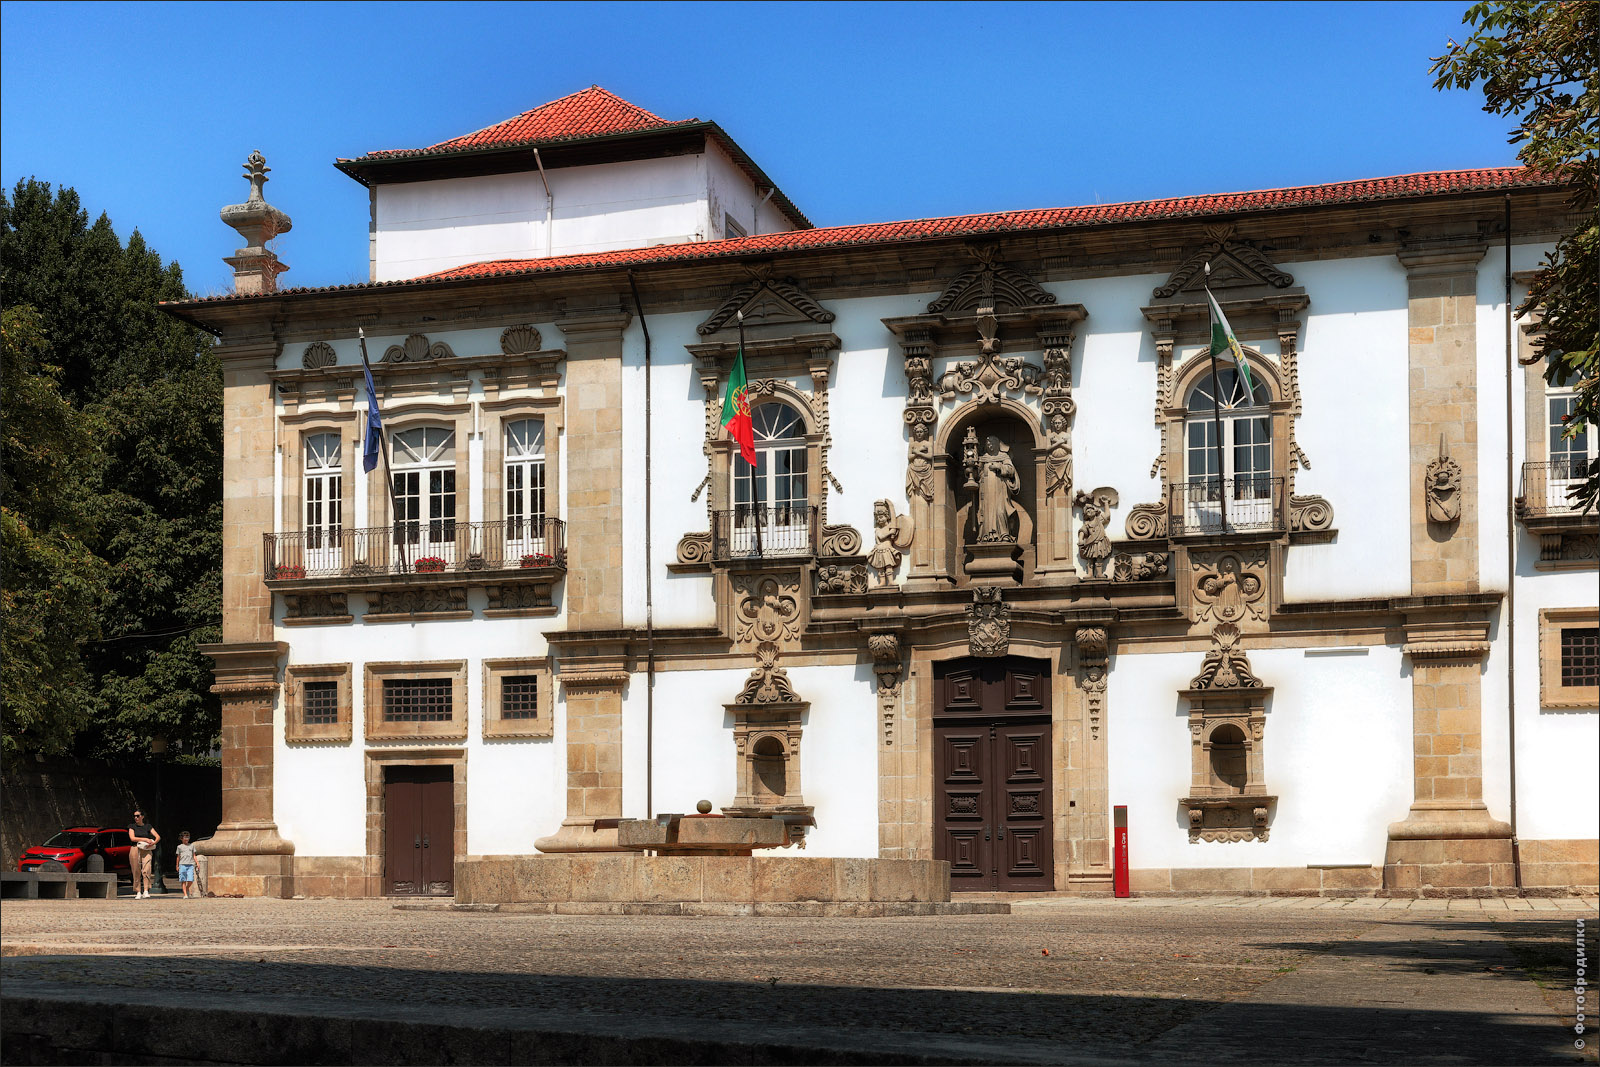 Монастырь св. Клары (Igreja e Convento de Santa Clara), Гимарайнш, Португалия